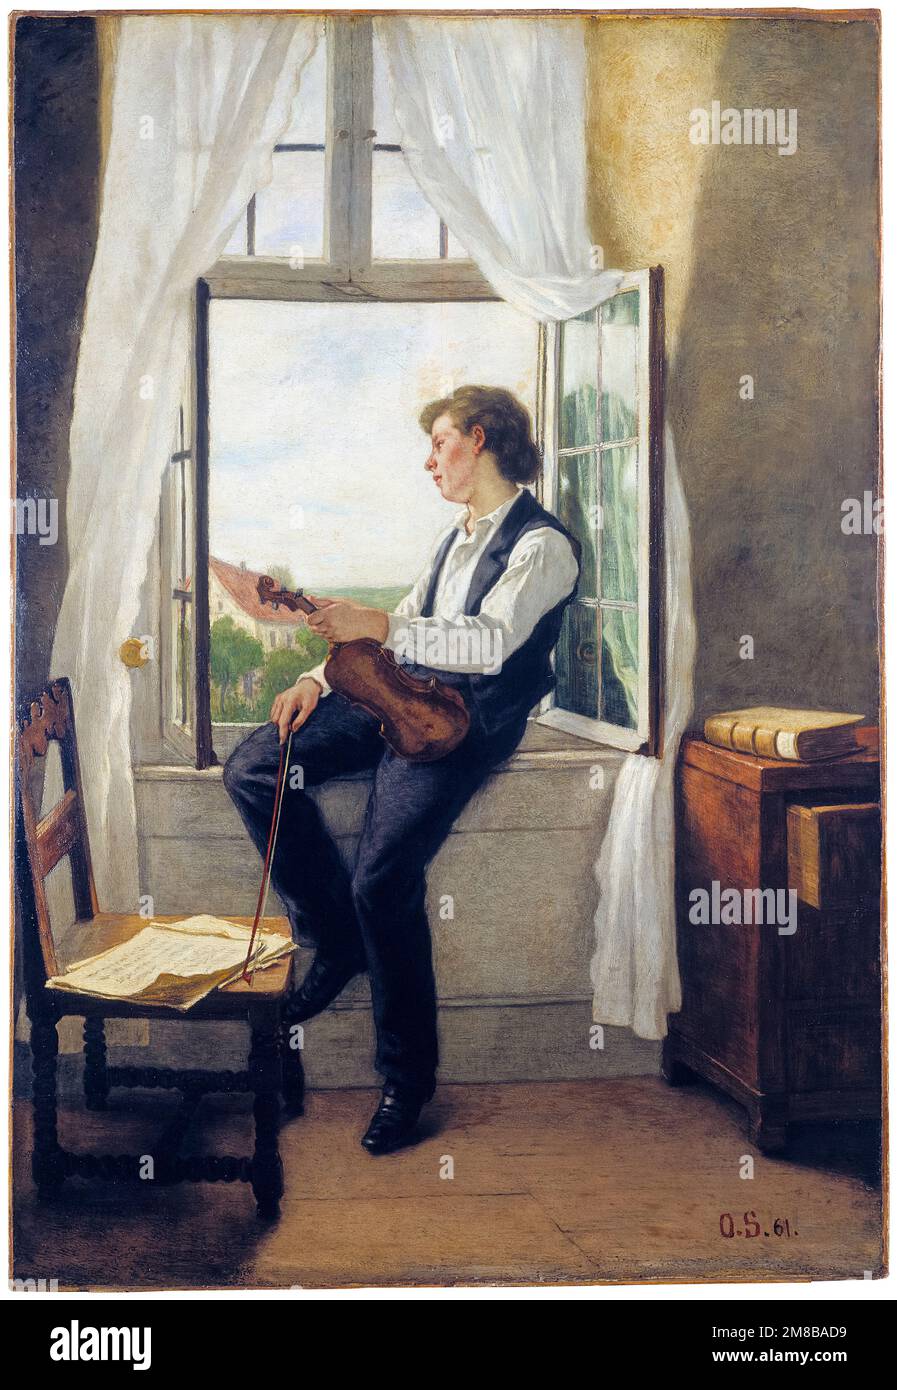 Otto Franz Scholderer, le violoniste de la fenêtre, huile sur toile, 1861 Banque D'Images